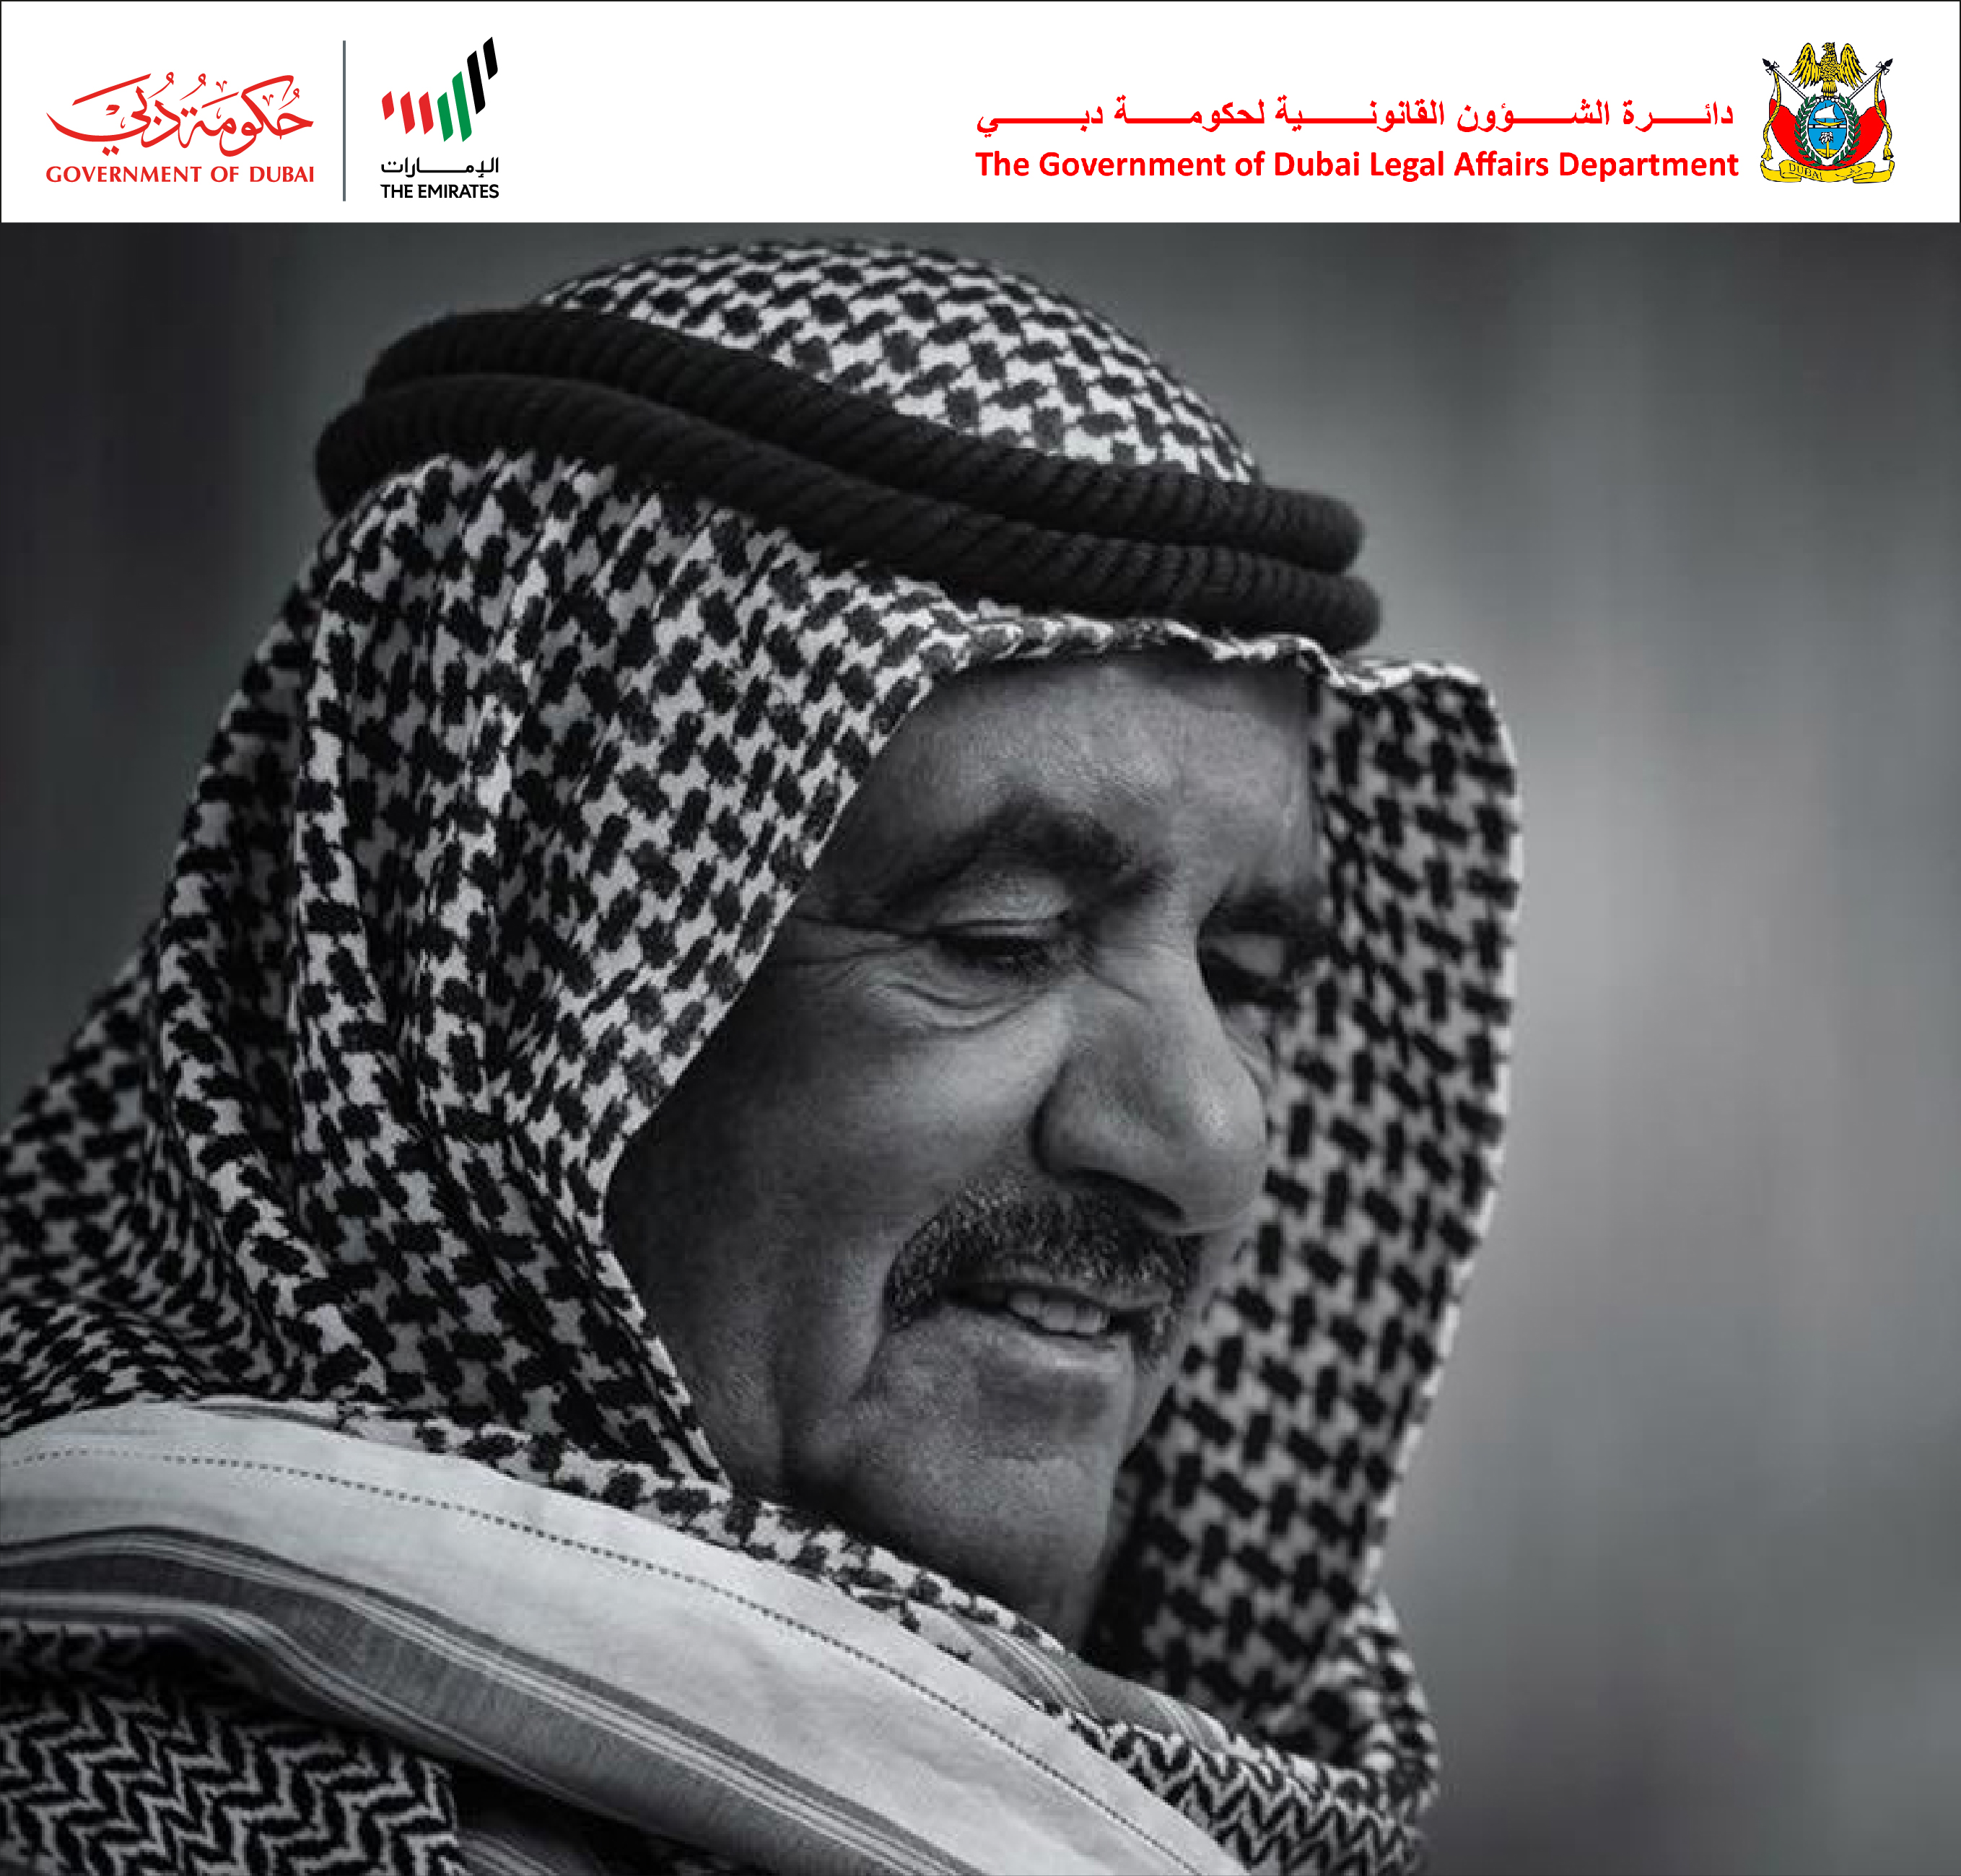 تصريح سعادة مدير عام دائرة الشؤون القانونية لحكومة دبي في نعي الشيخ حمدان بن راشد آل مكتوم